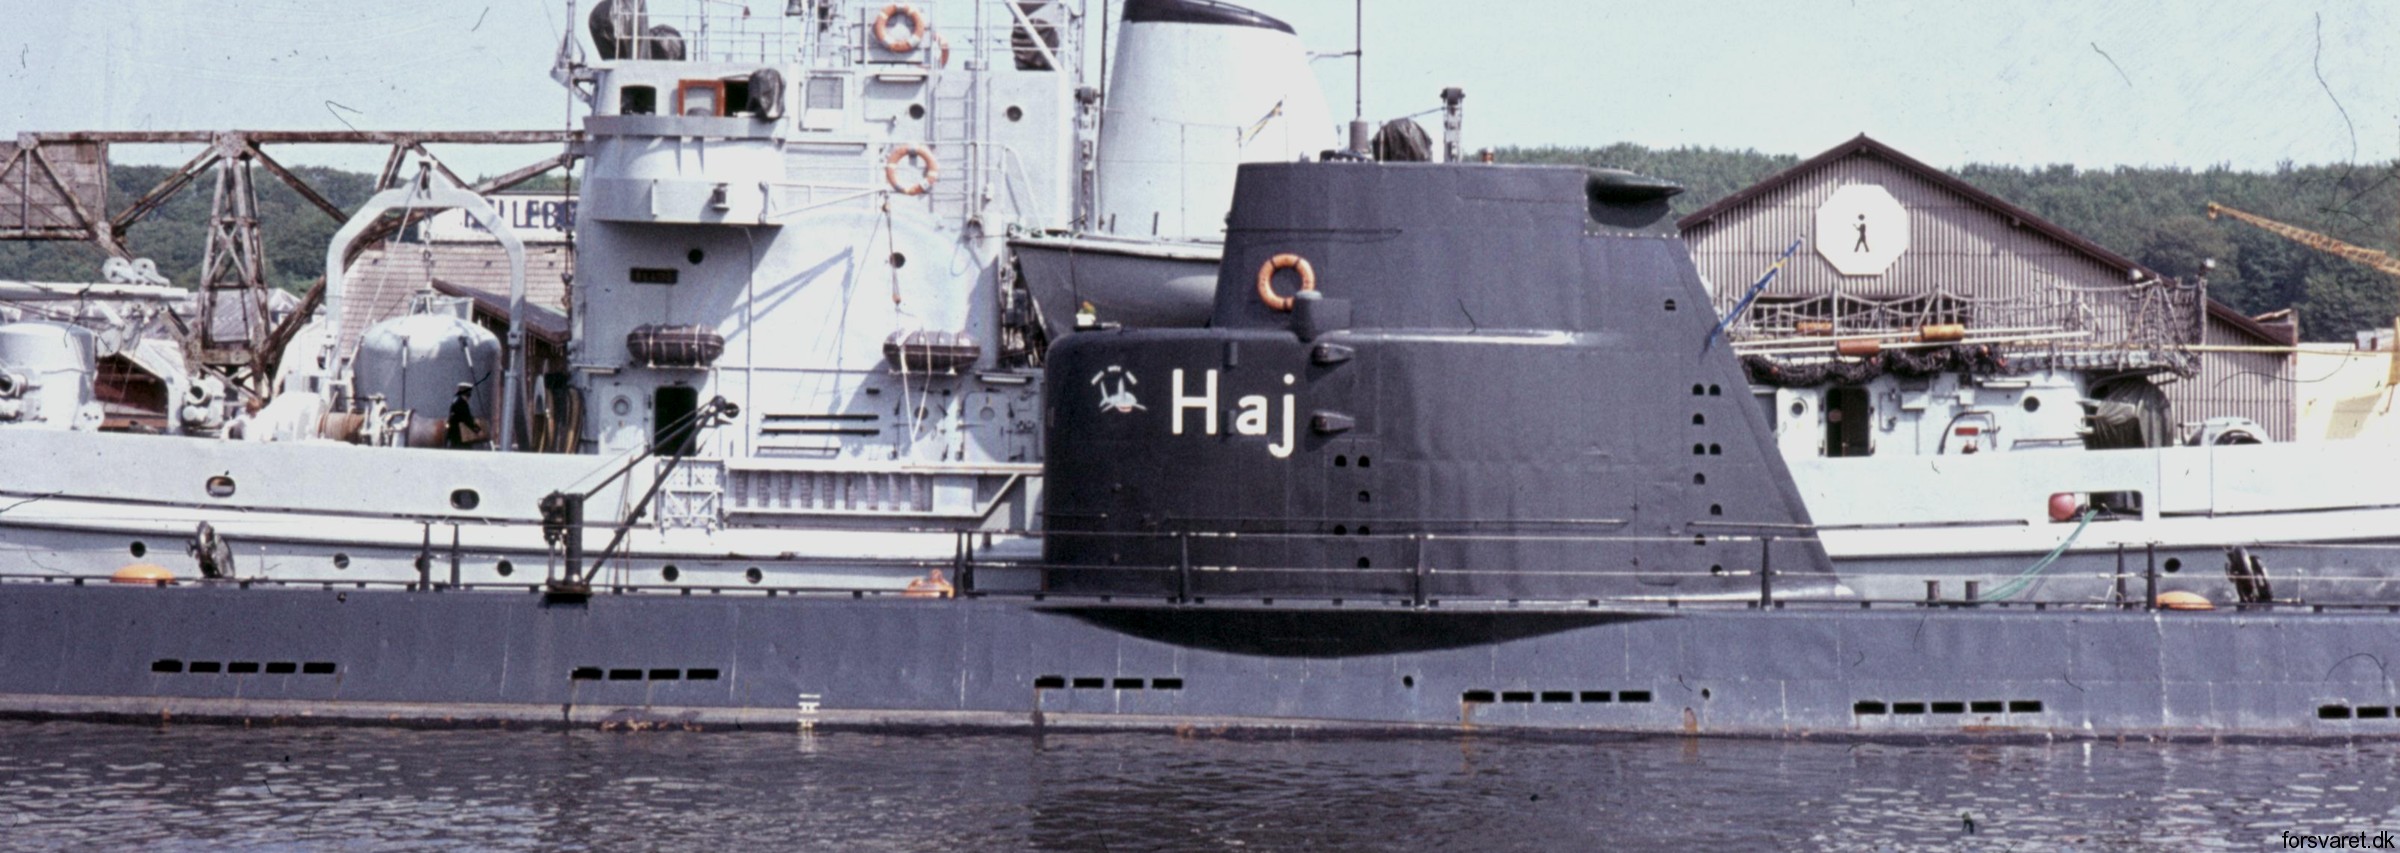 hms hswms hajen a10 class attack submarine ubåt swedish navy svenska marinen försvarsmakten 06